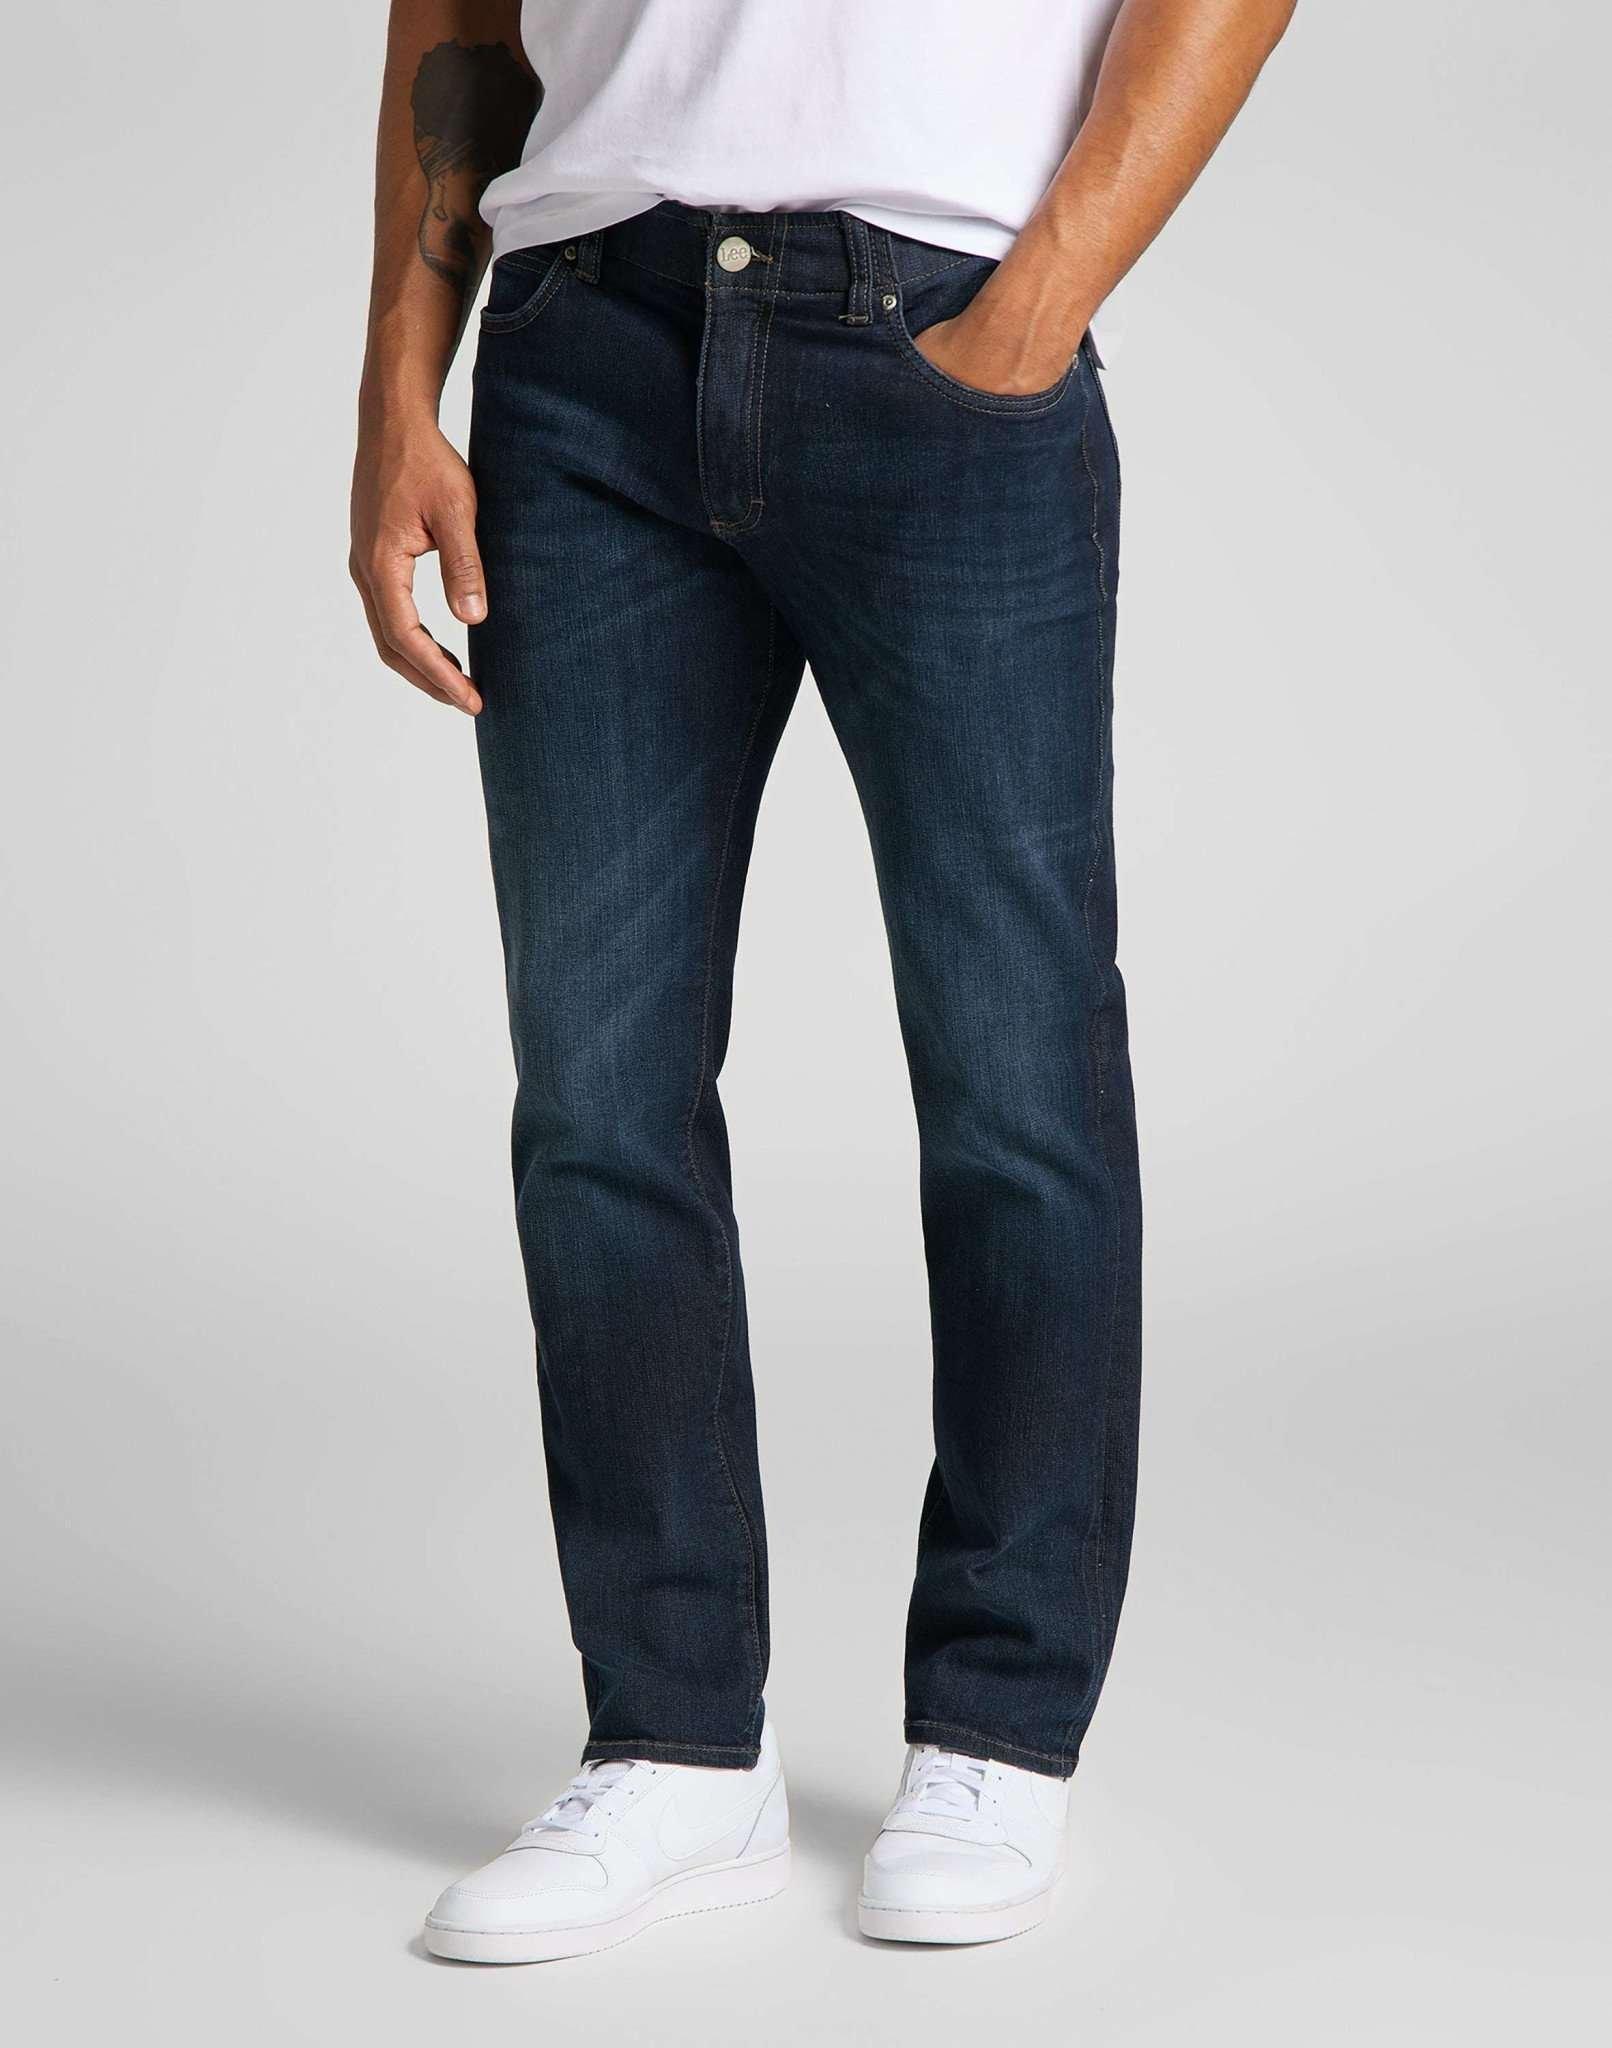 Jeans Straight Leg Xm Herren Blau Denim L32/W34 von Lee